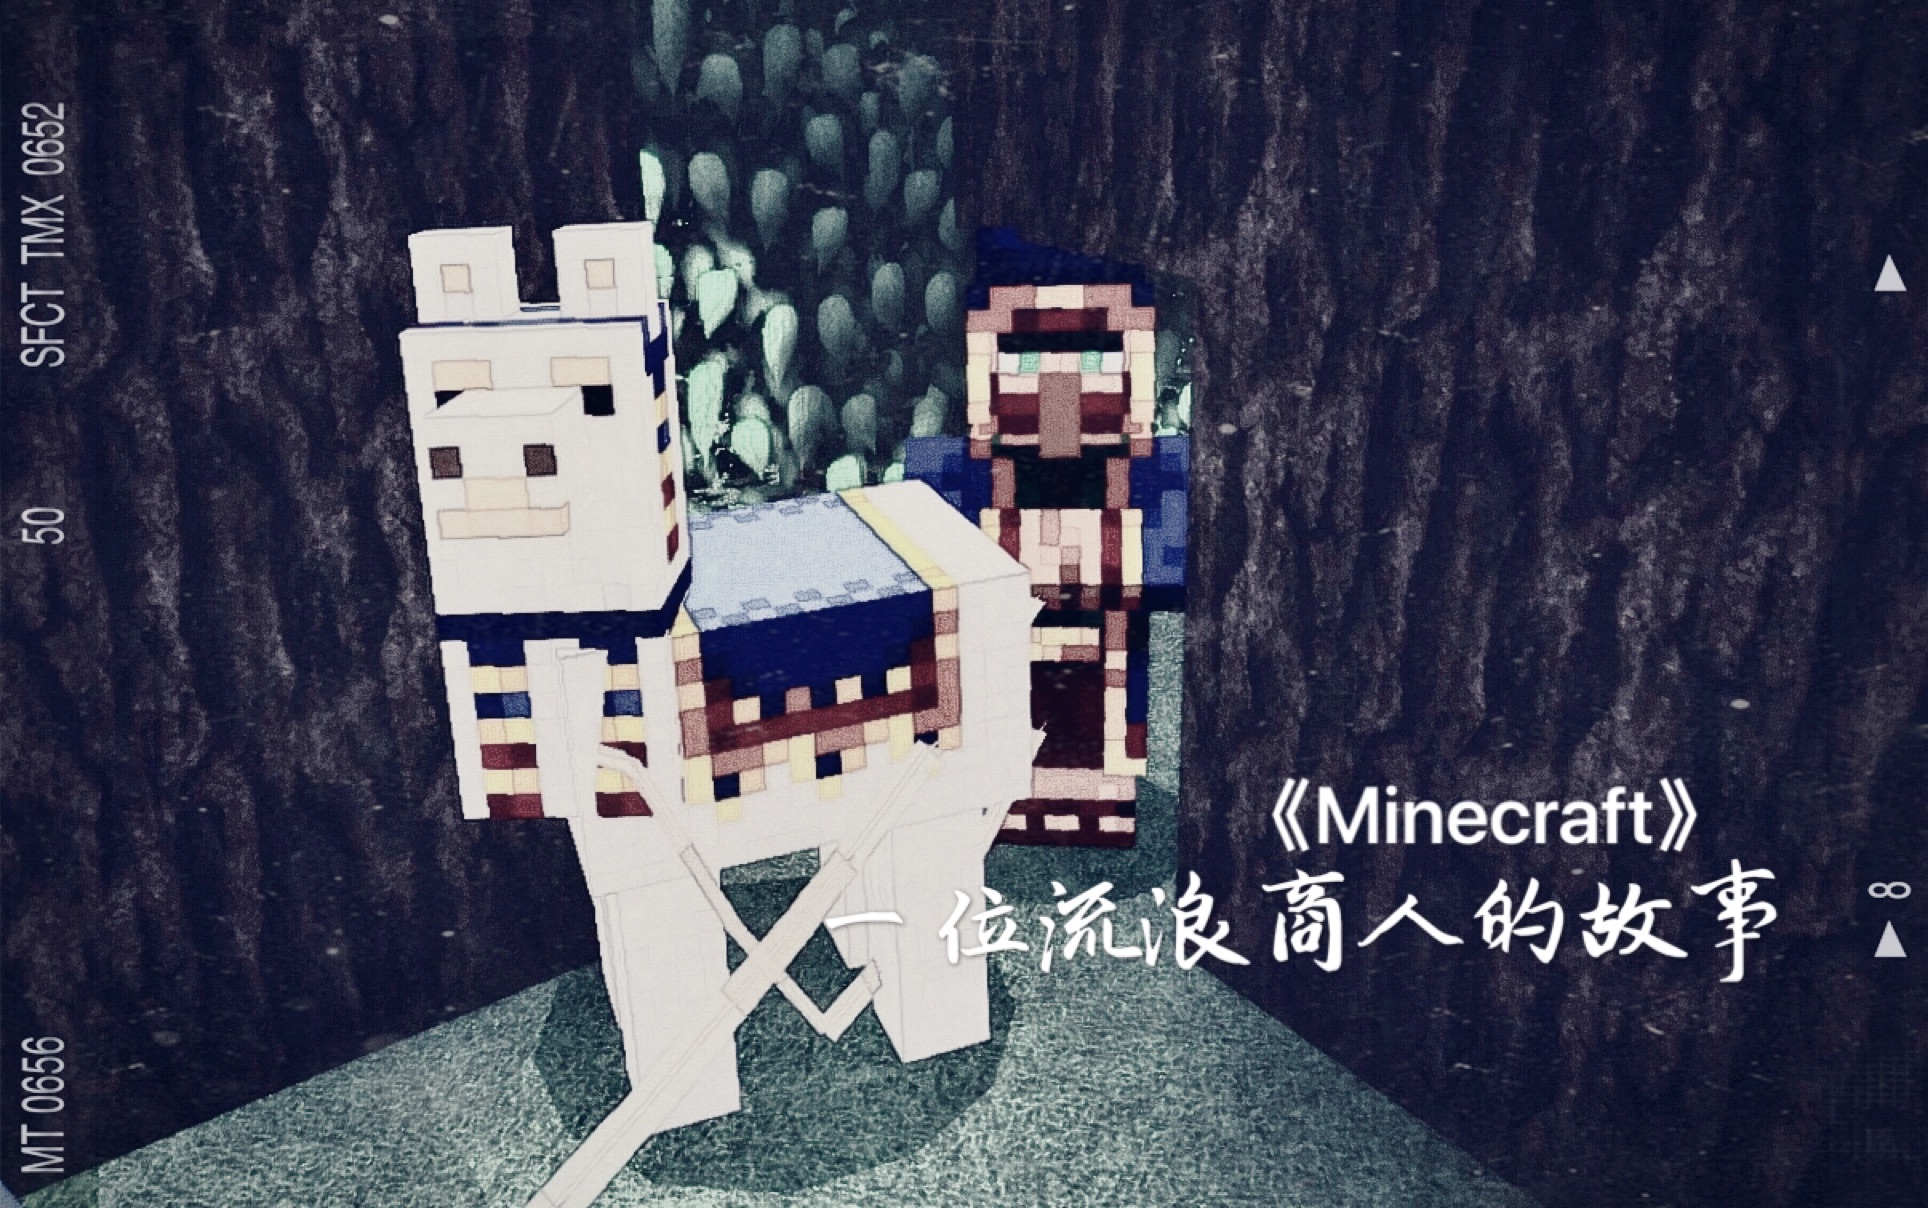 微电影 催泪向 Minecraft 一位流浪商人的自述 不爱可以 请别伤害 哔哩哔哩 つロ干杯 Bilibili